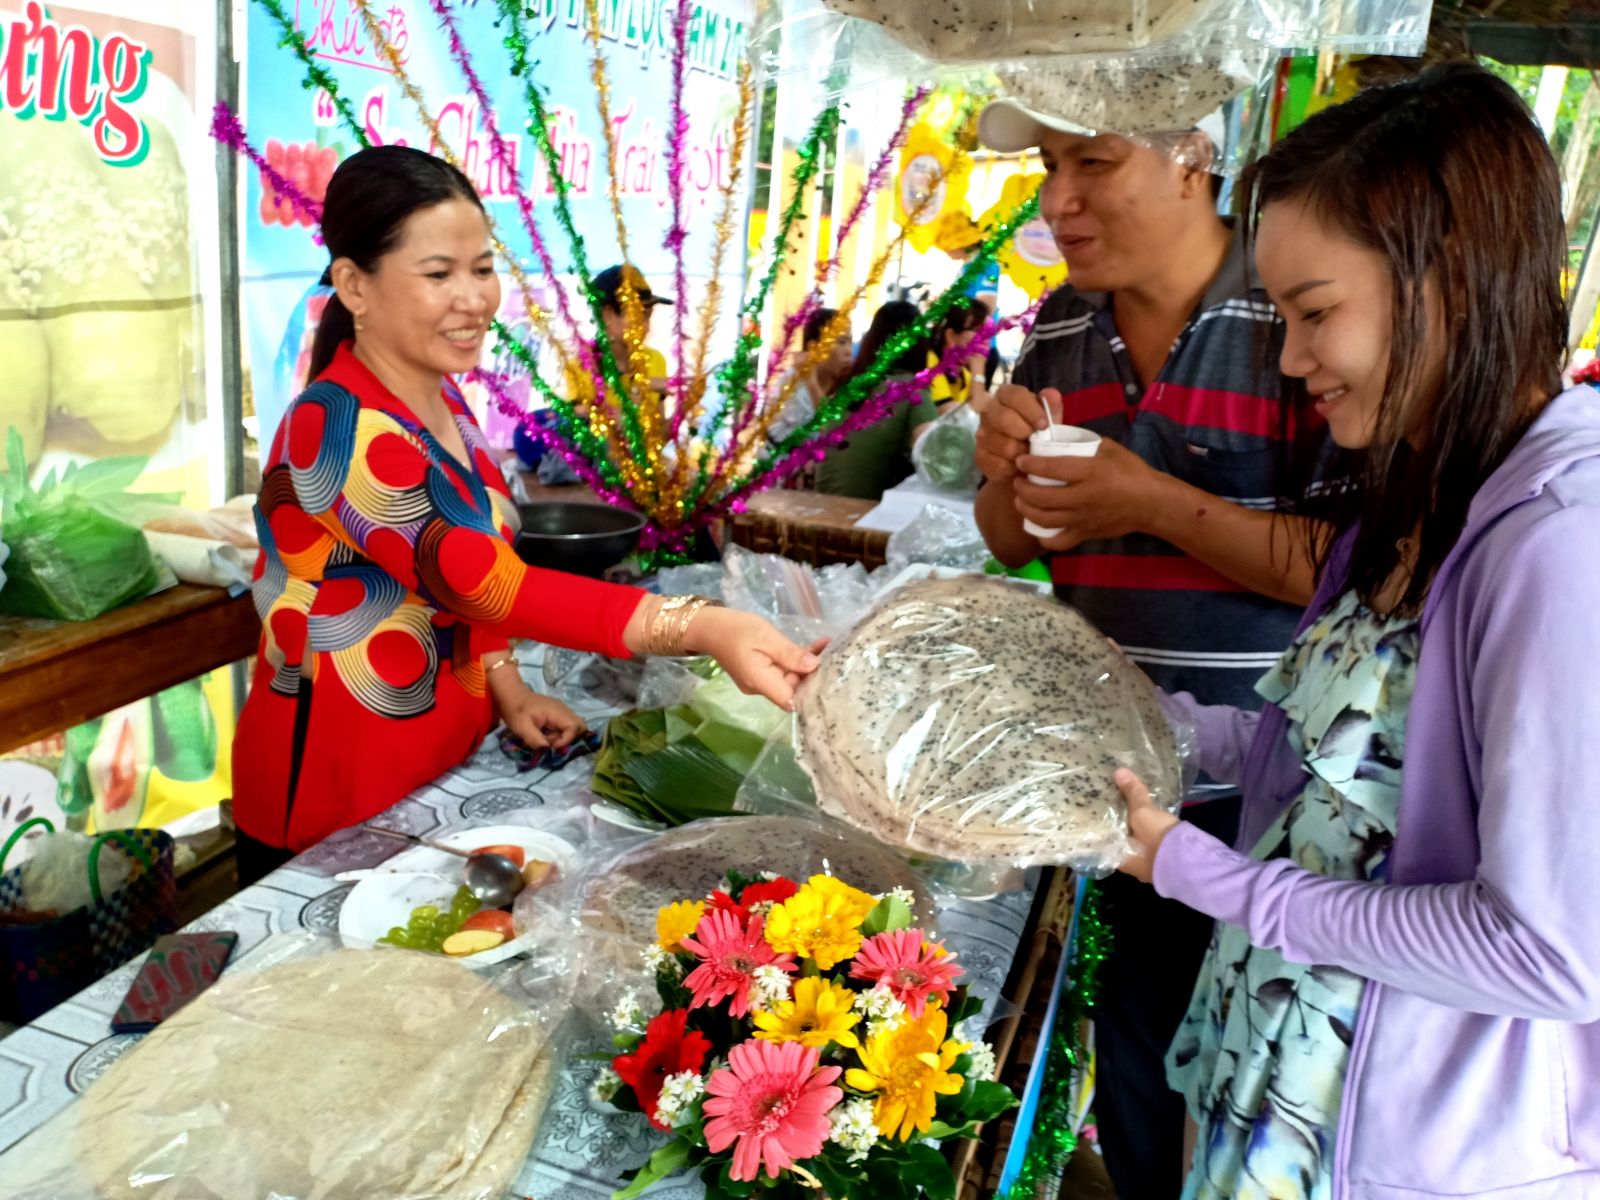 Những gian hàng ẩm thực, giới thiệu đặc sản địa phương luôn đông khách. Trong ảnh: khách chọn mua bánh tráng Thuận Hưng nổi tiếng của quận Thốt Nốt.